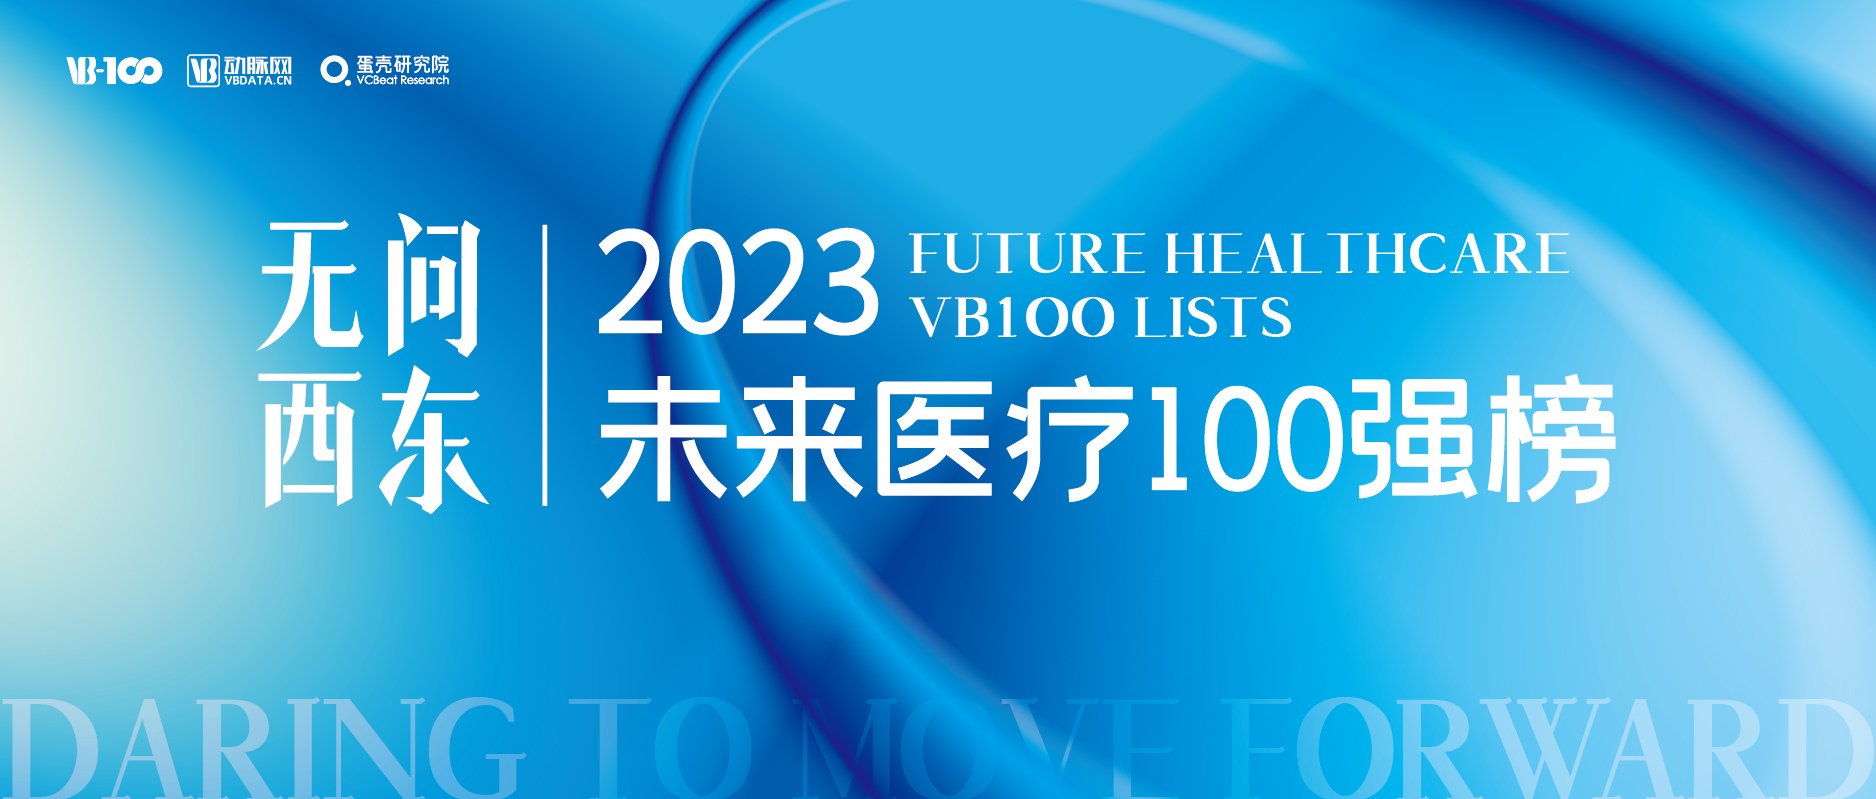 希格生科荣登动脉网「2023 年未来医疗 100 强」榜单